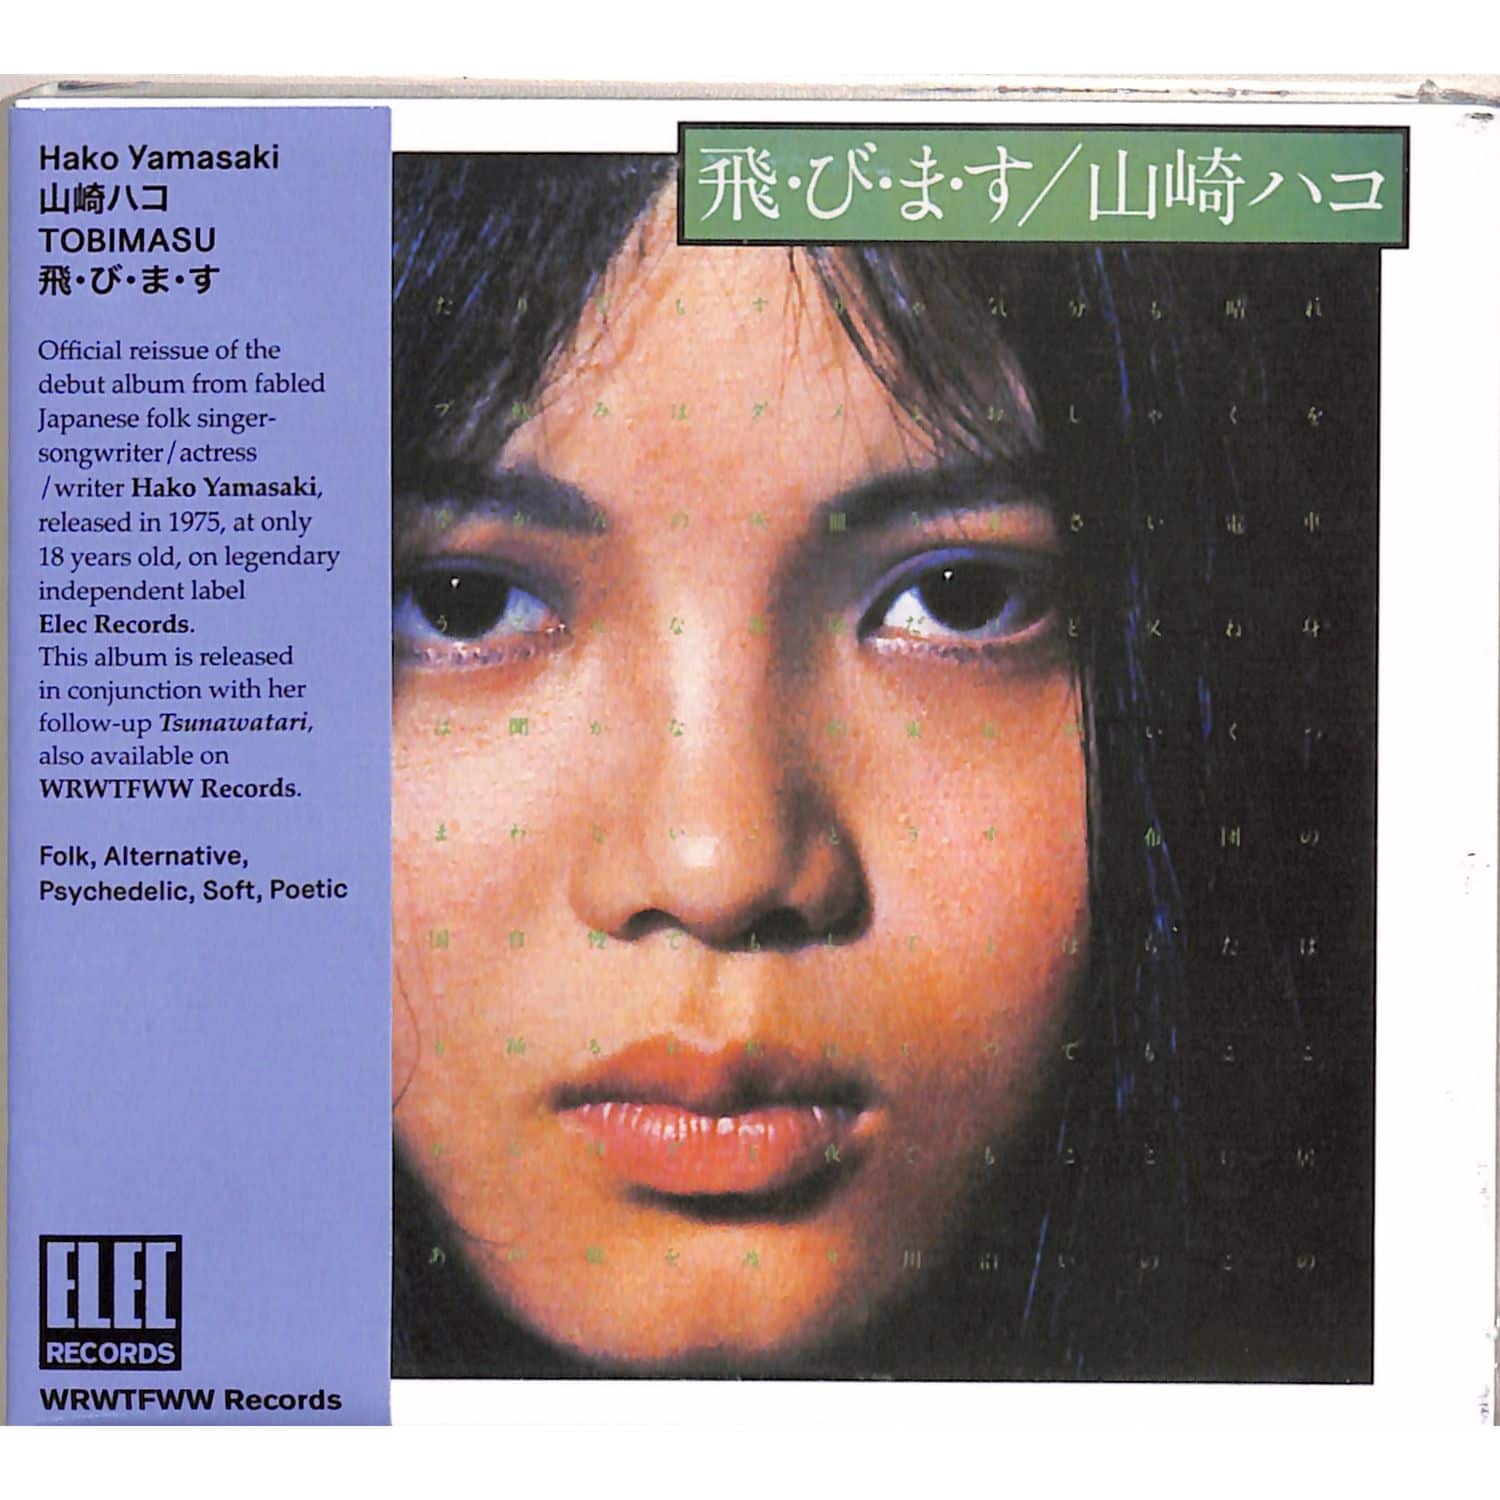 Hako Yamasaki - TOBIMASU 